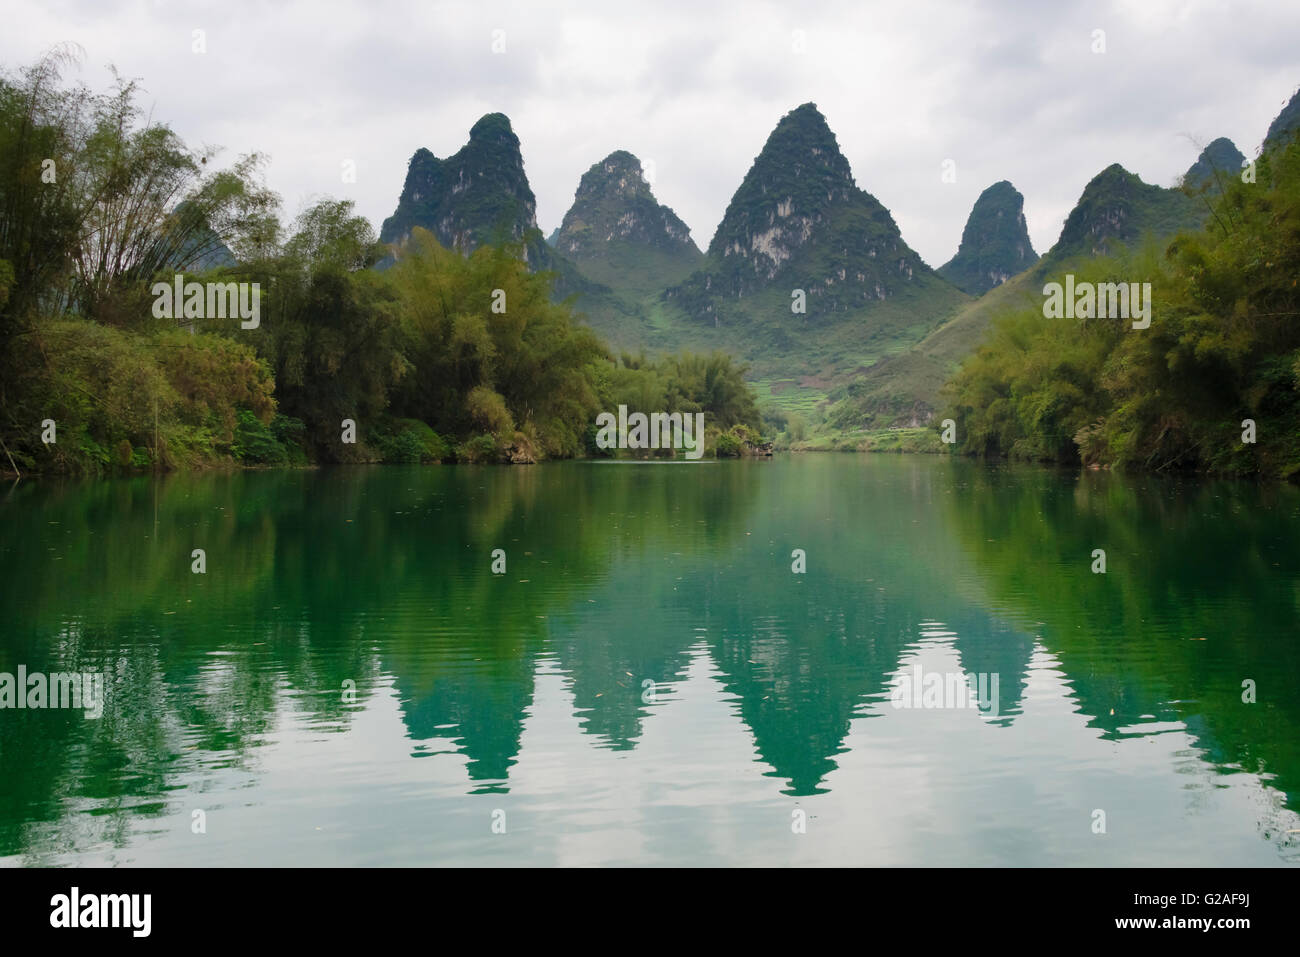 Collines karstiques avec Chipe River, Yizhou, Province du Guangxi, Chine Banque D'Images